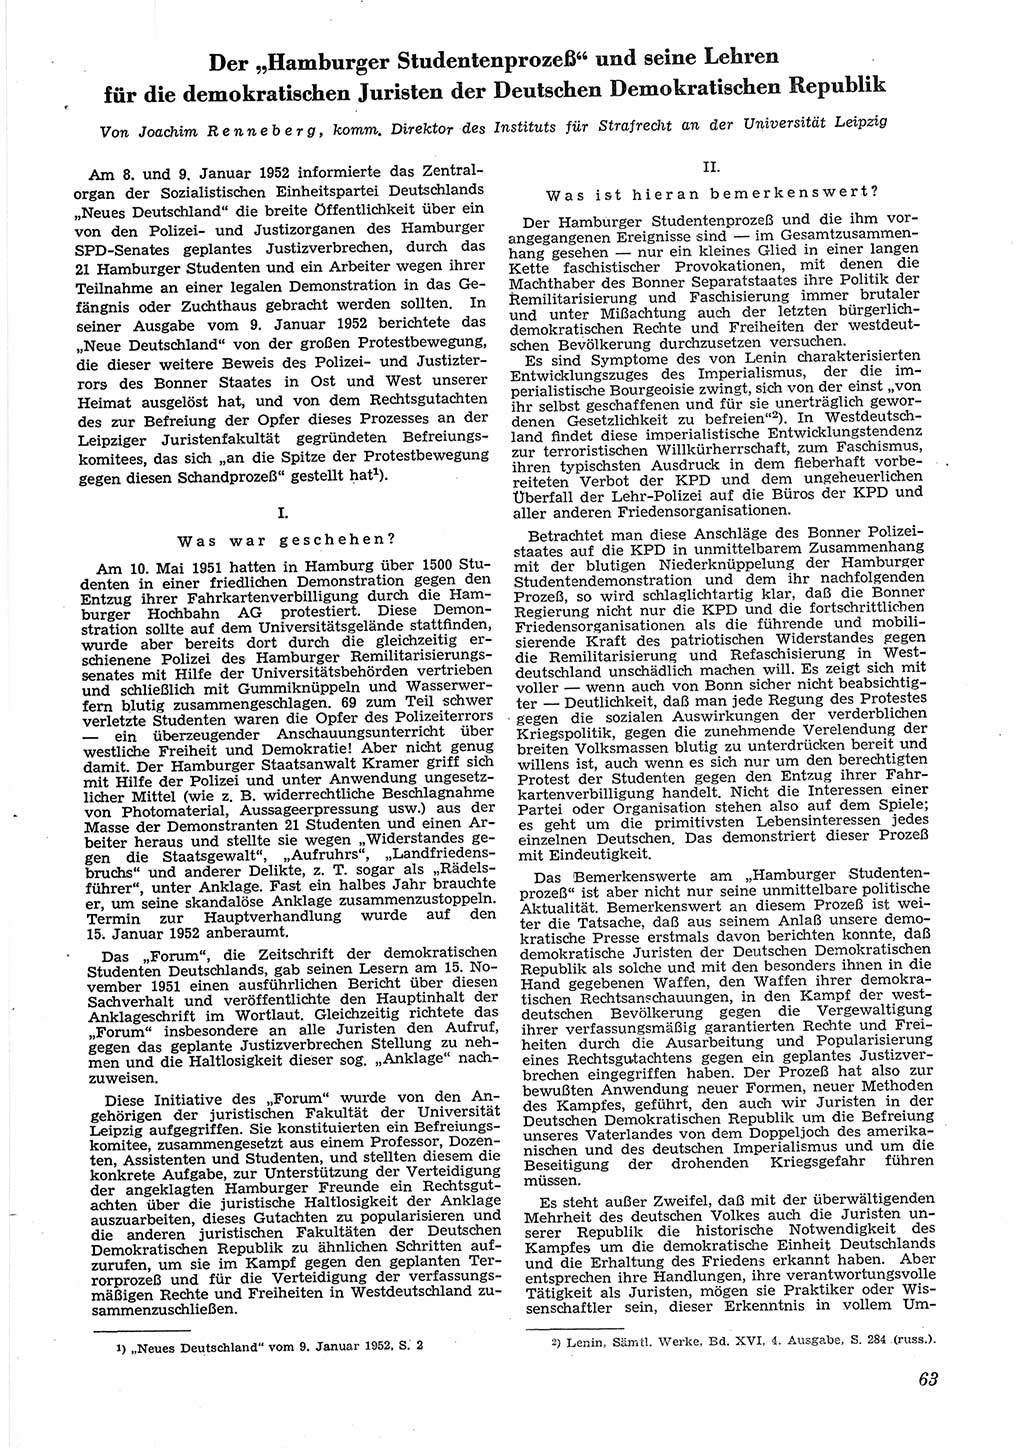 Neue Justiz (NJ), Zeitschrift für Recht und Rechtswissenschaft [Deutsche Demokratische Republik (DDR)], 6. Jahrgang 1952, Seite 63 (NJ DDR 1952, S. 63)